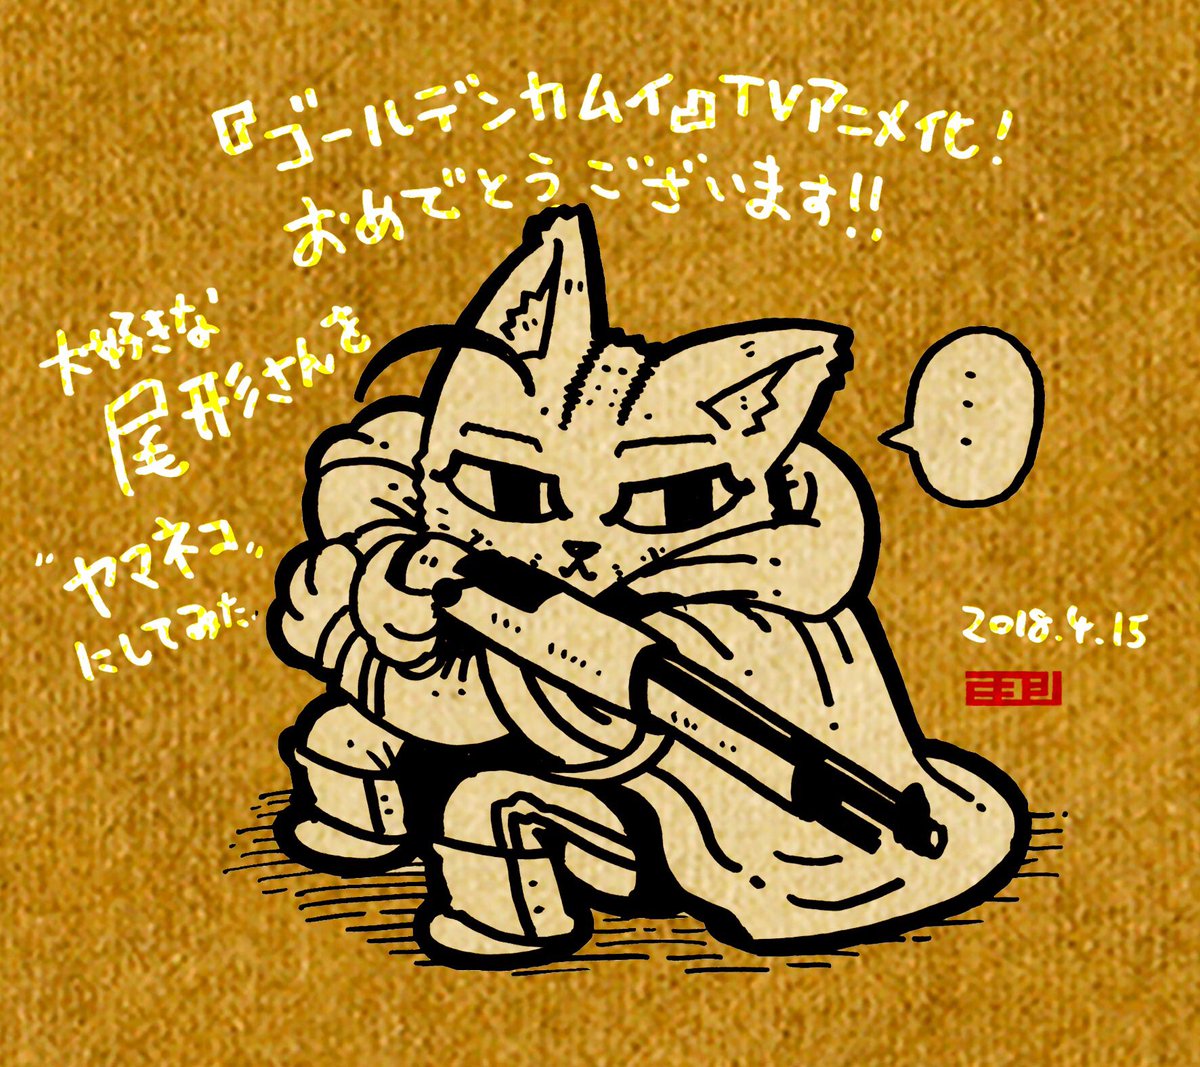 ミヨシ ゲーム会社デザイナー サイバーコネクトツー A Twitter 遅くなっちゃいましたが ゴールデンカムイ 祝ｔｖアニメ化 大好きなキャラクターは尾形百之助さん カッケェんだこれが 異名の 山猫 からほんとに猫化してみました 笑 漫画もアニメも楽しみ